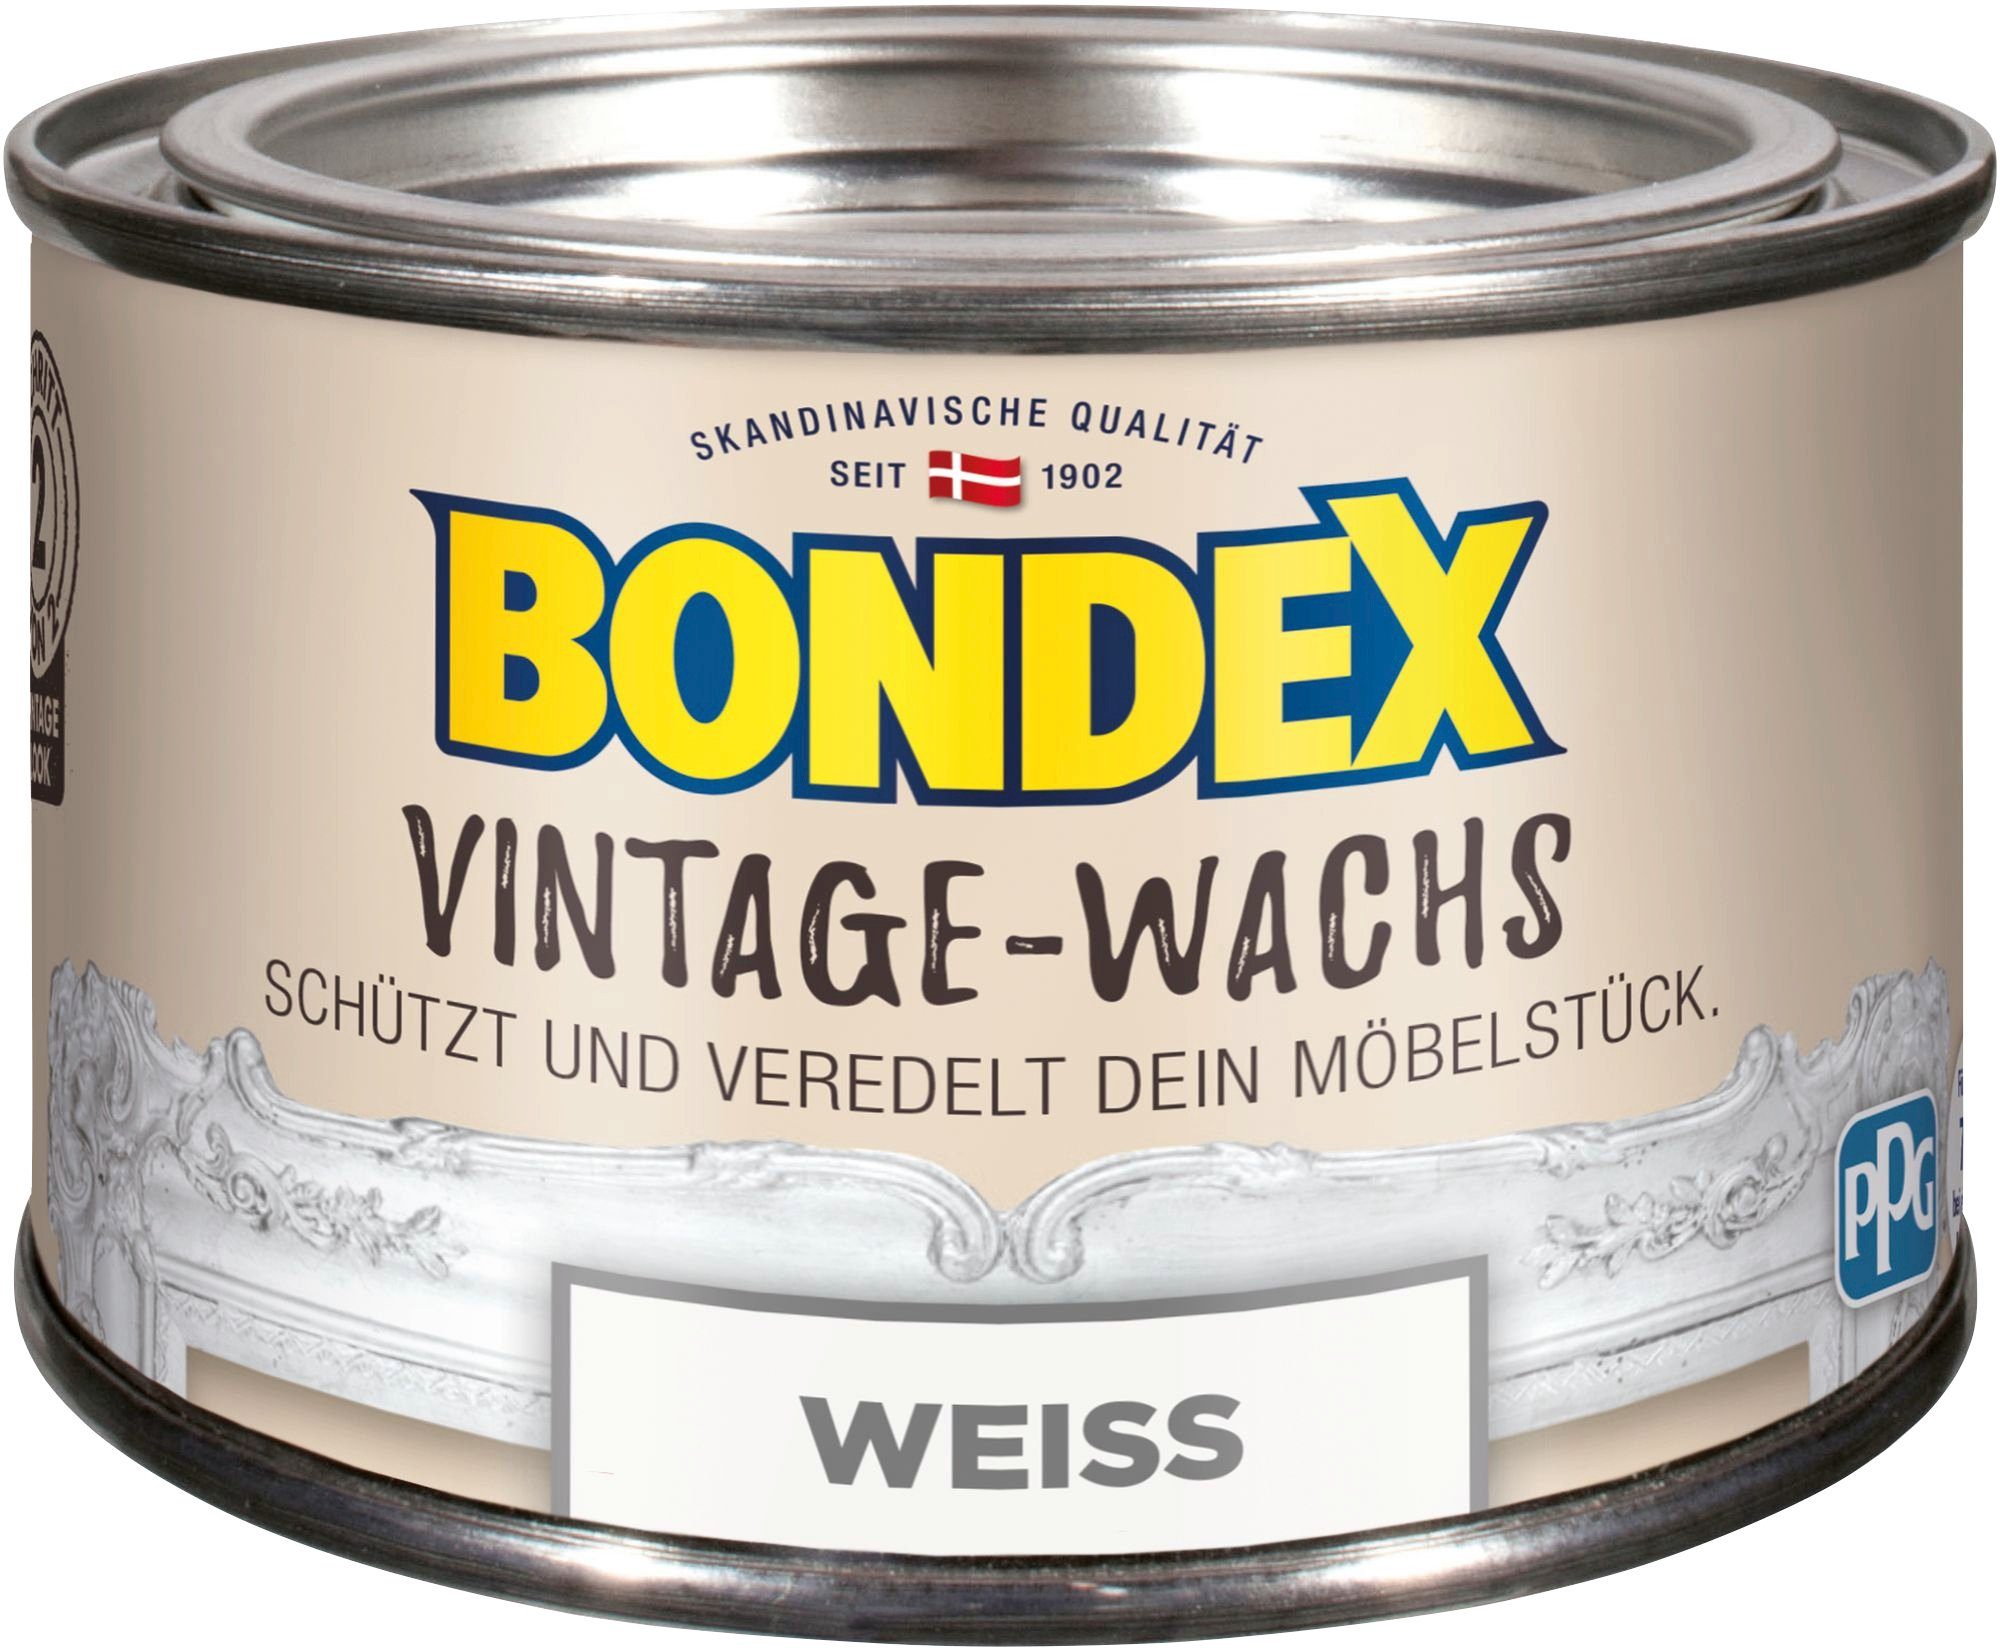 der Grau Bondex weiß Schutz und zum VINTAGE-WACHS l Möbelstücke, 0,25 Veredelung Schutzwachs,